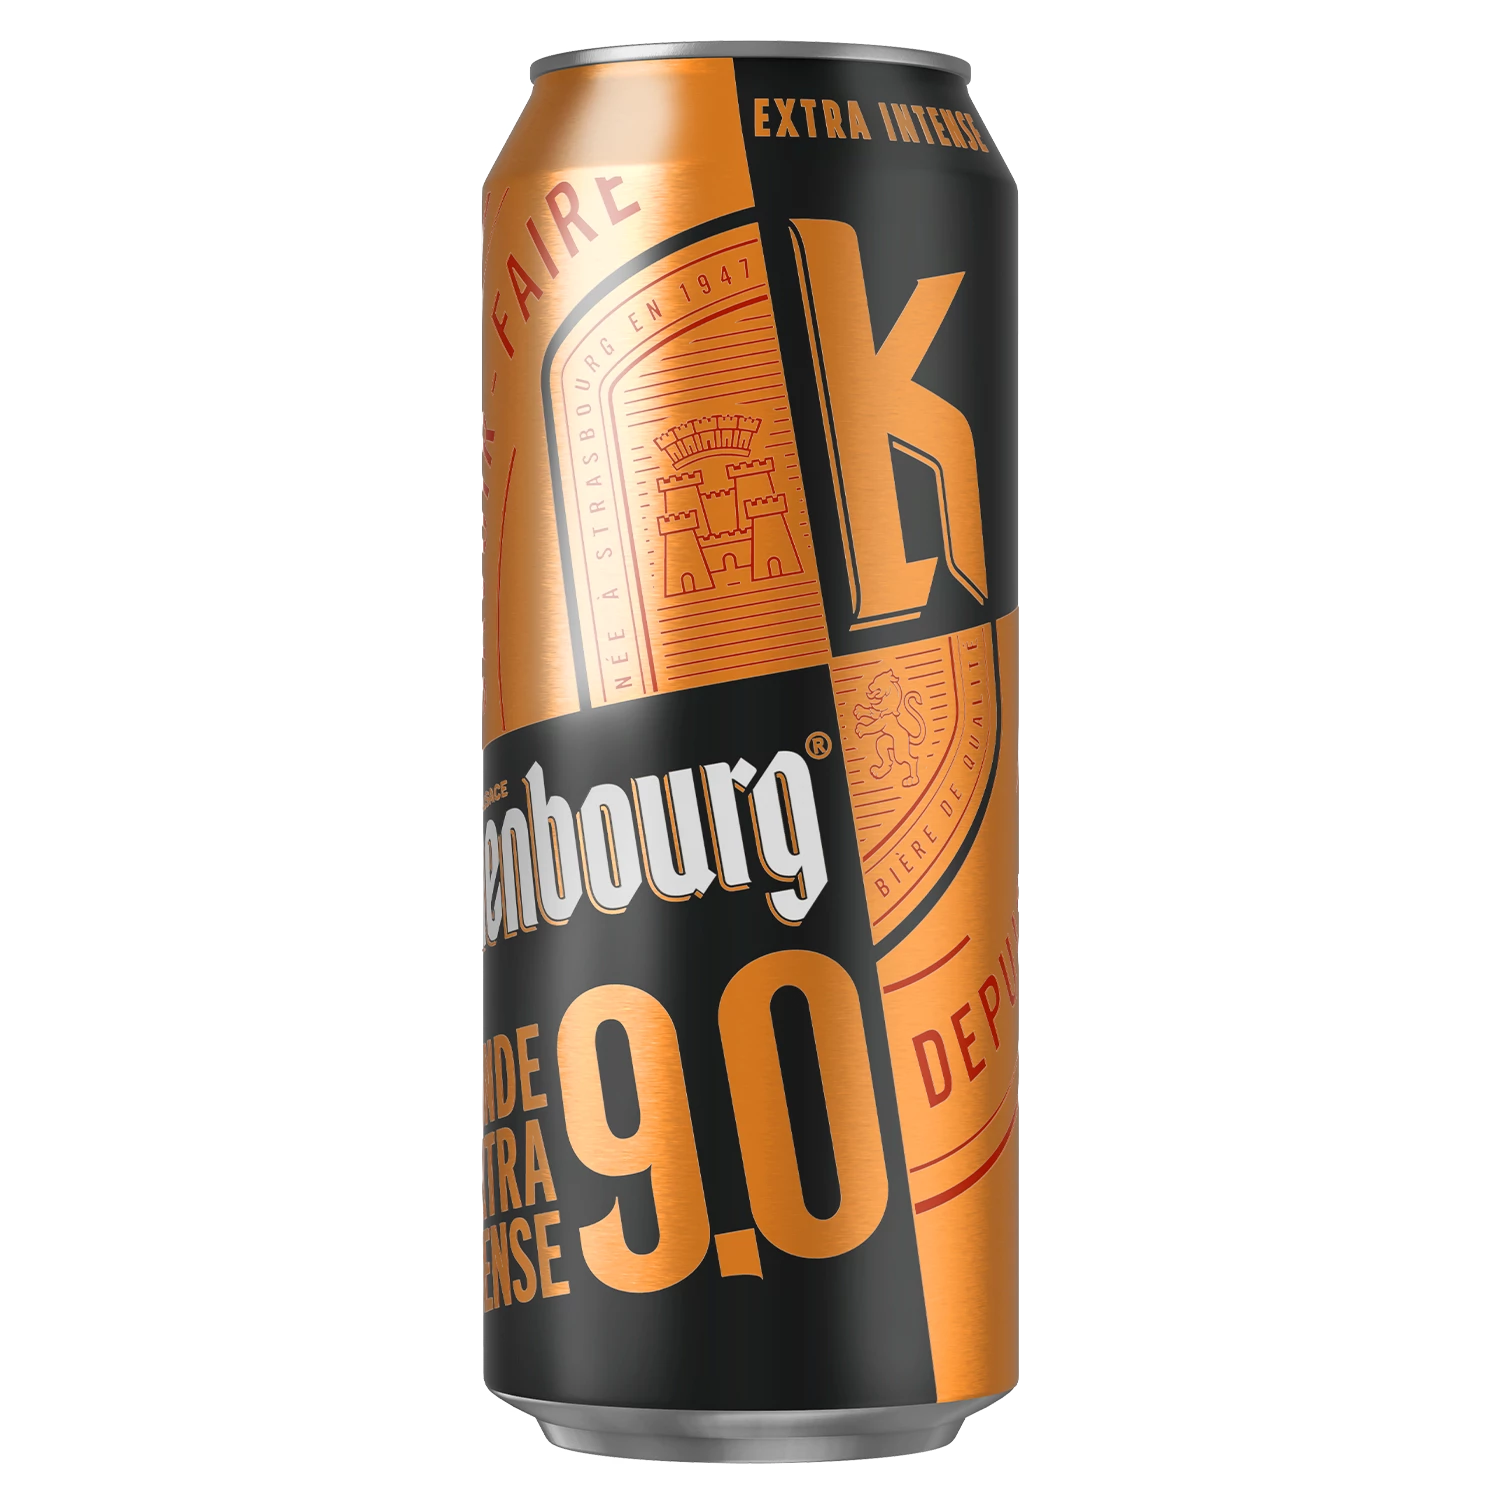 Bia vàng đậm đặc, 9°, 50cl - KRONENBOURG